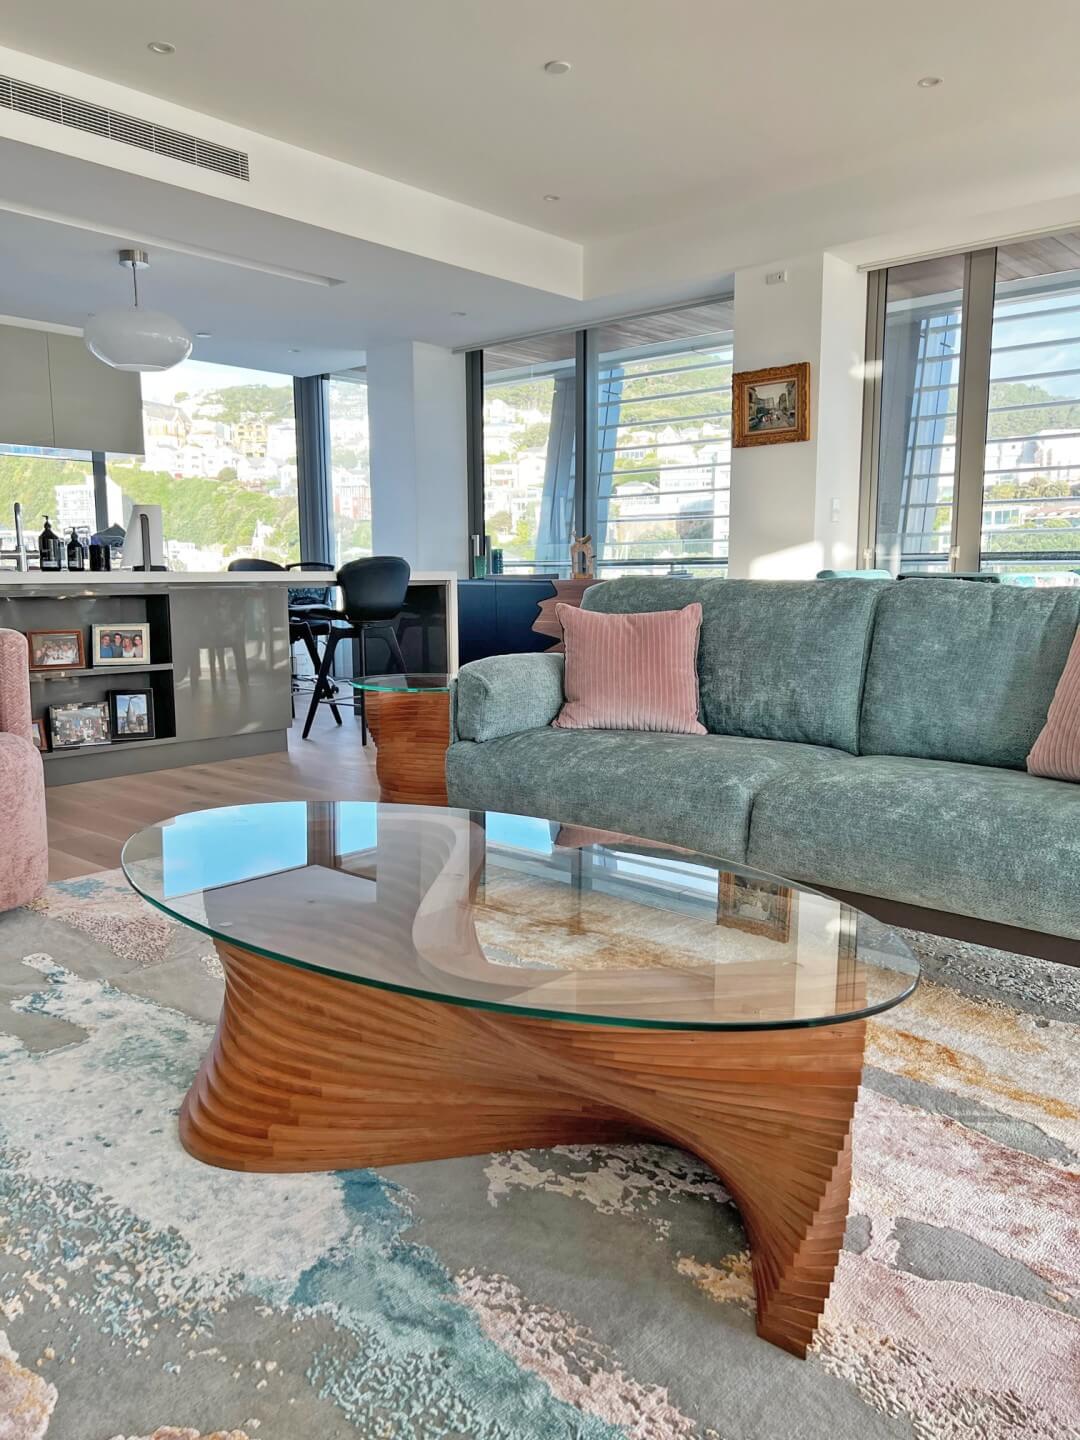 Sidewinder sculptural coffee table in Jon Landau’s living room